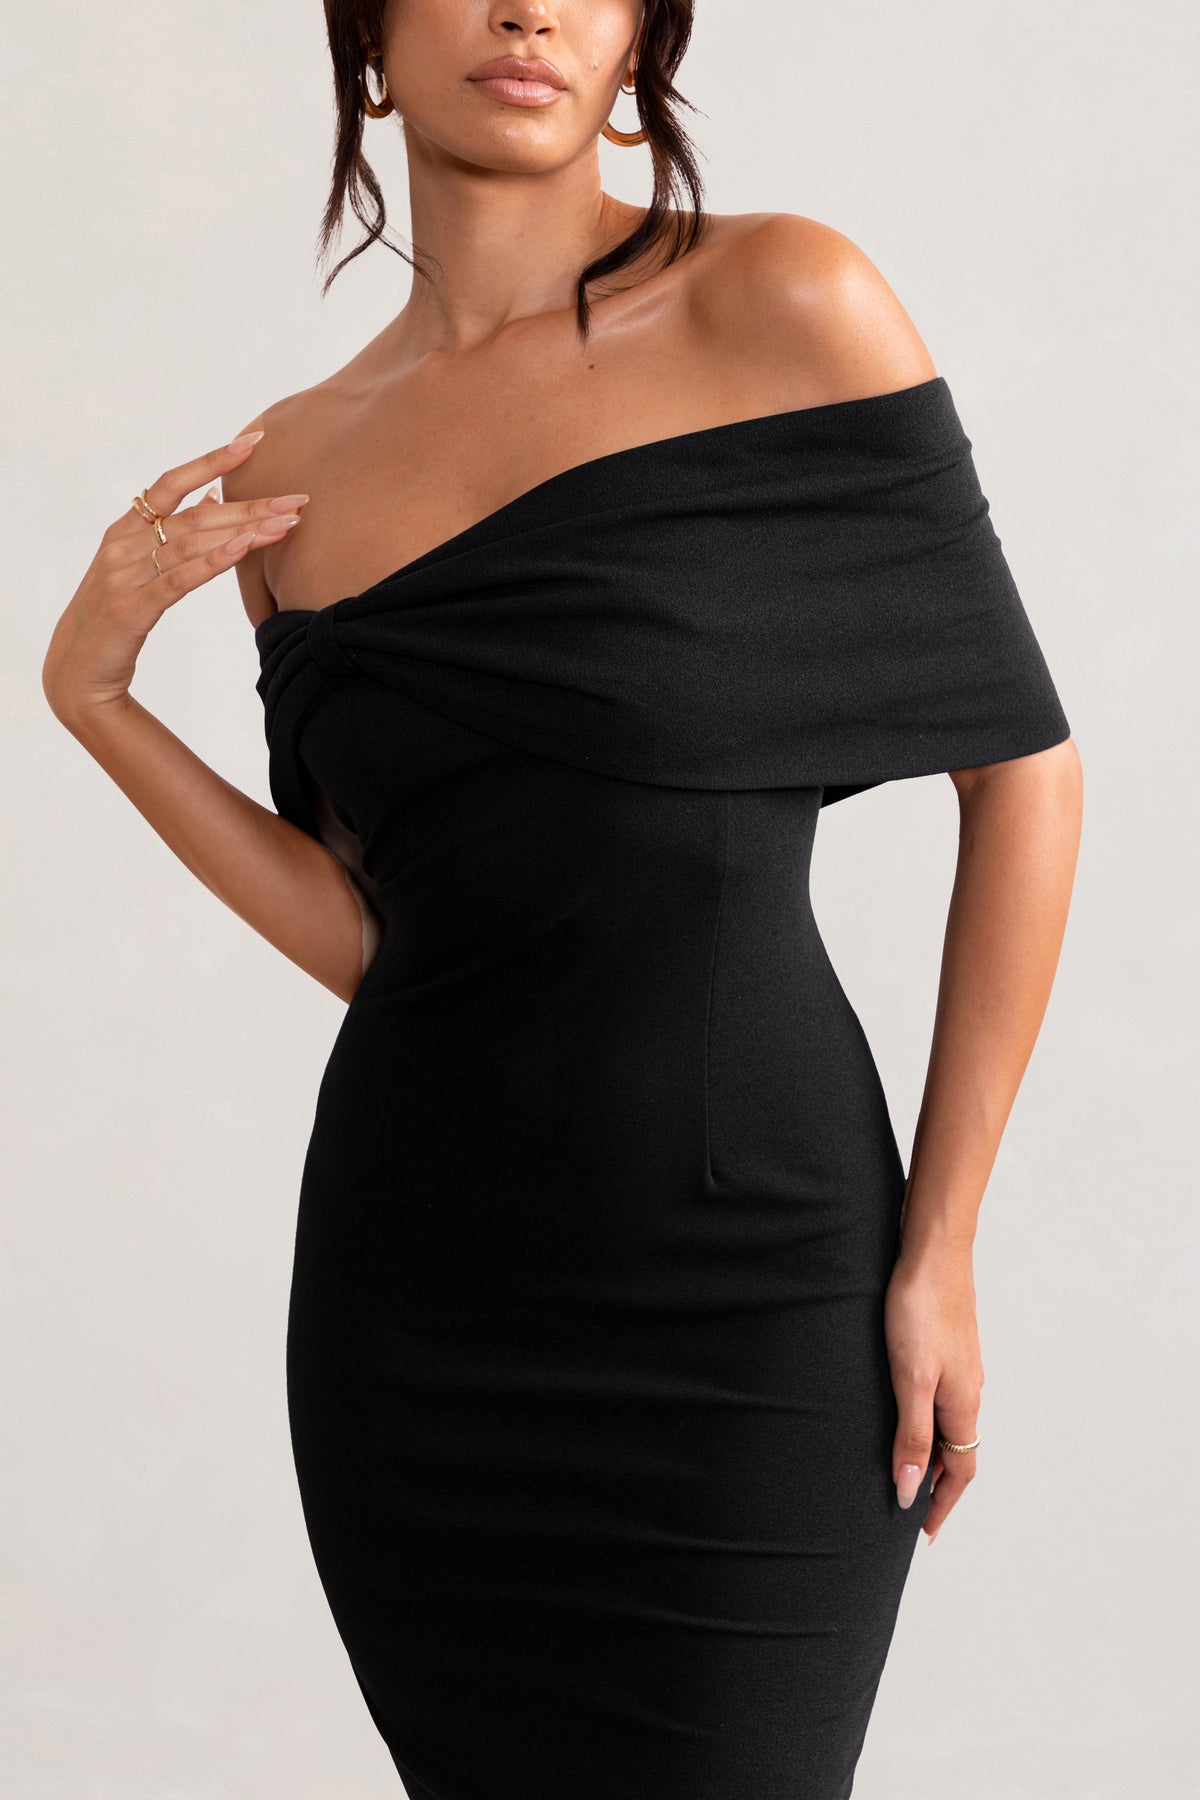 Estie Black Structured Statement Bardot Midi Dress – Club L London - IRE